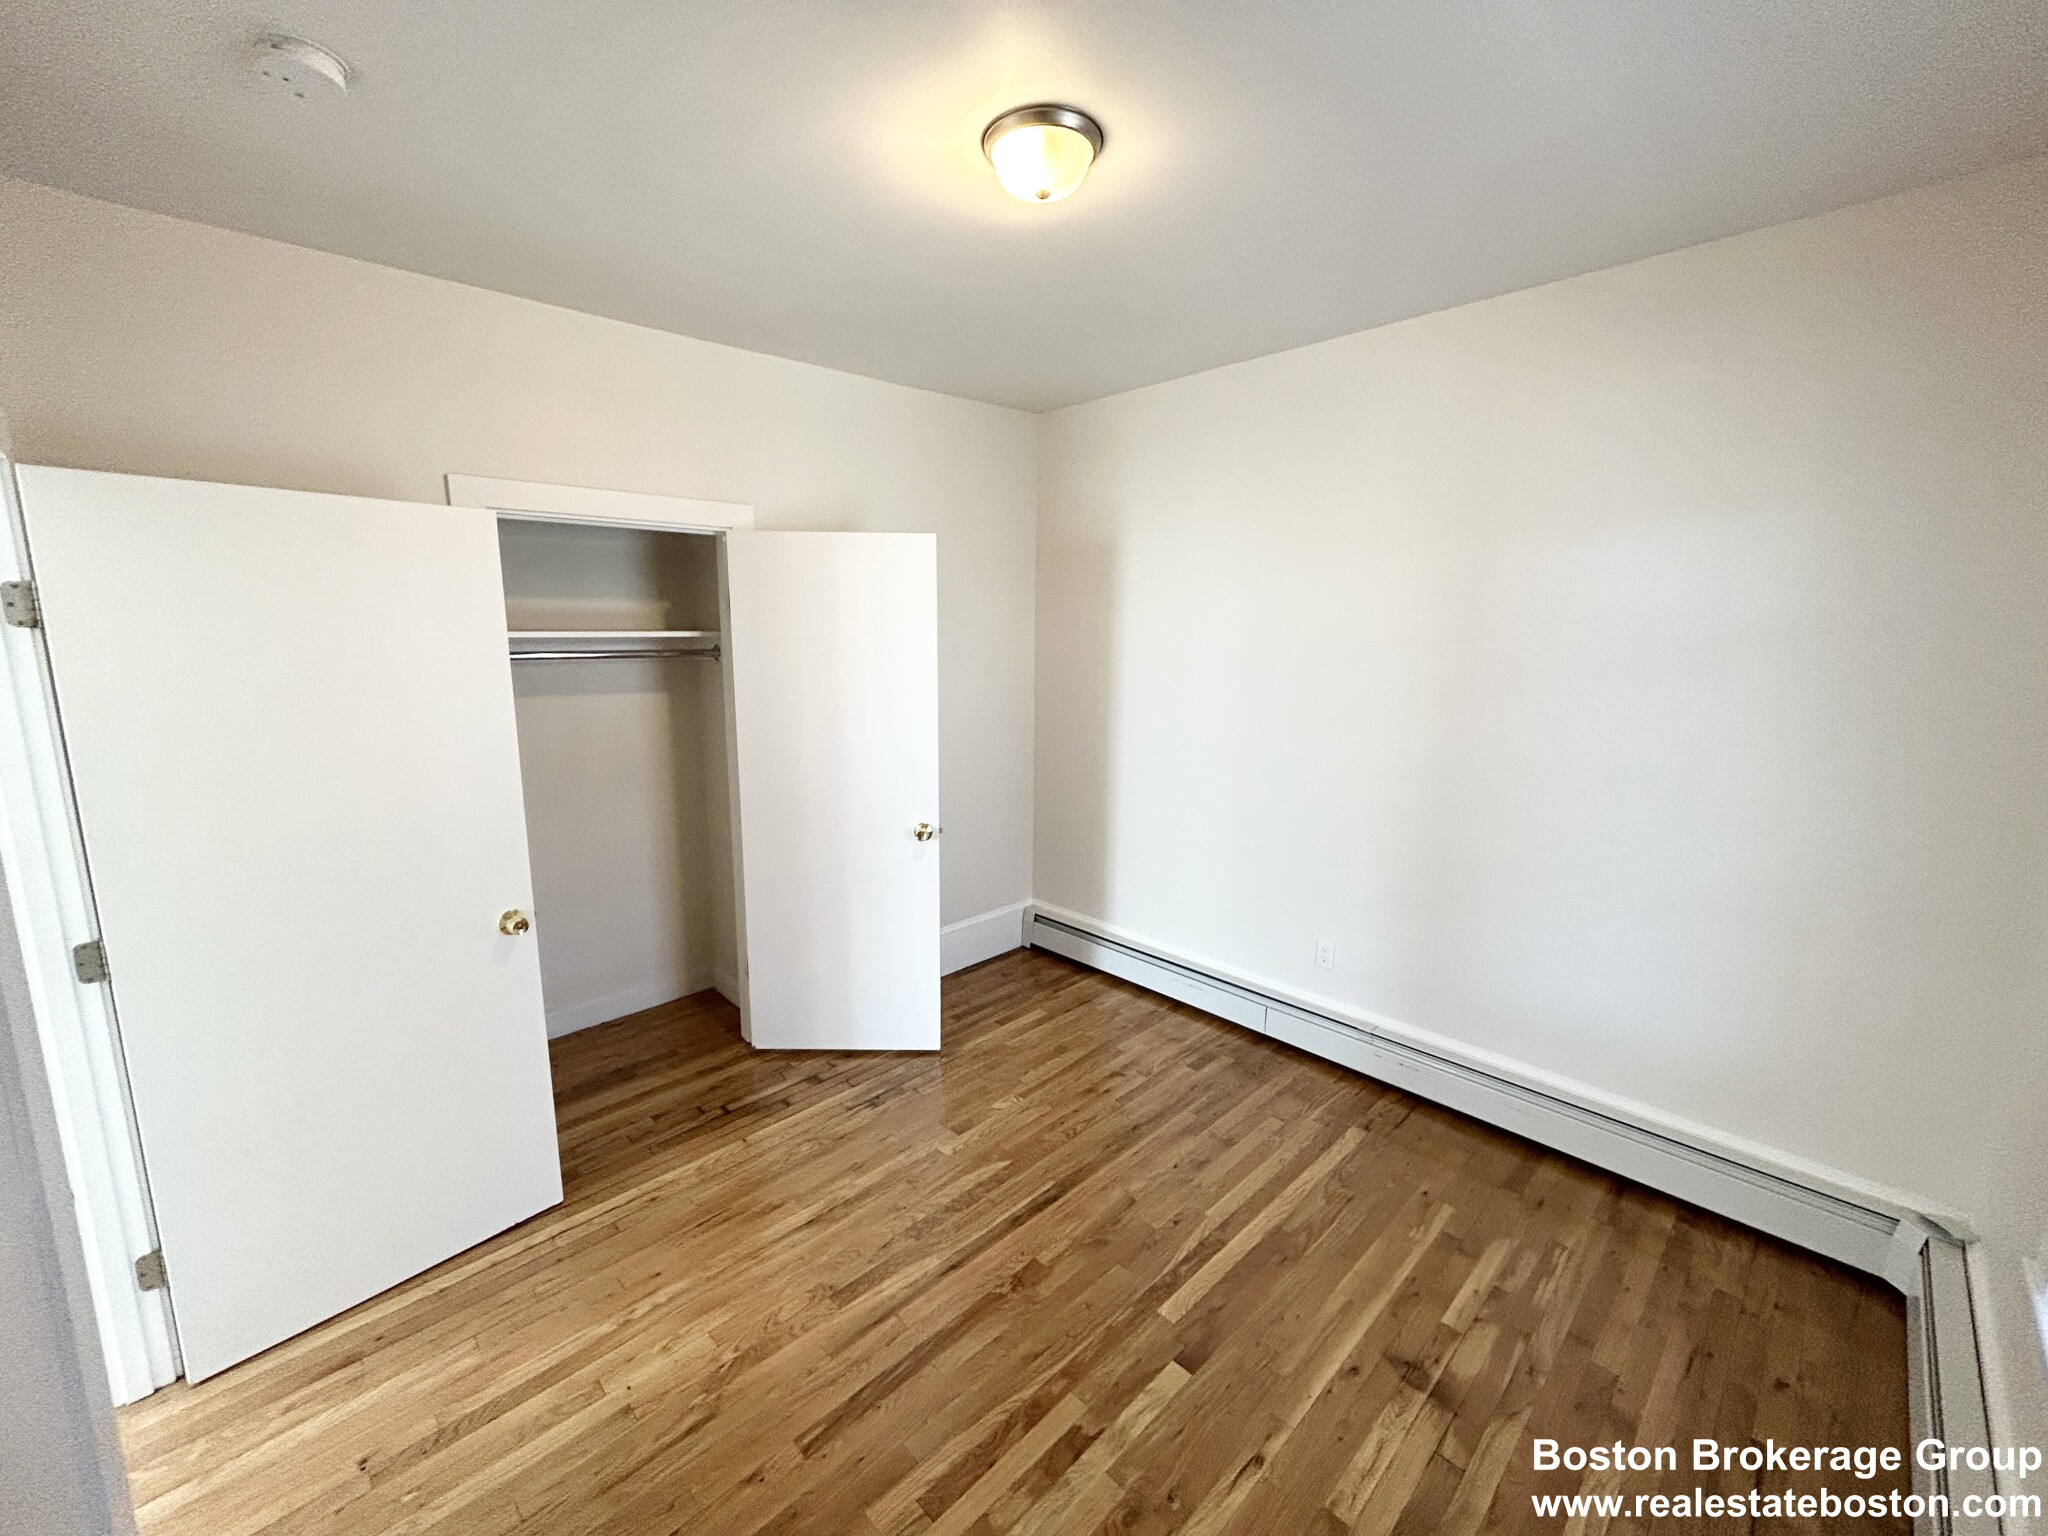 Photos of apartment on Elder St.,Boston MA 02125